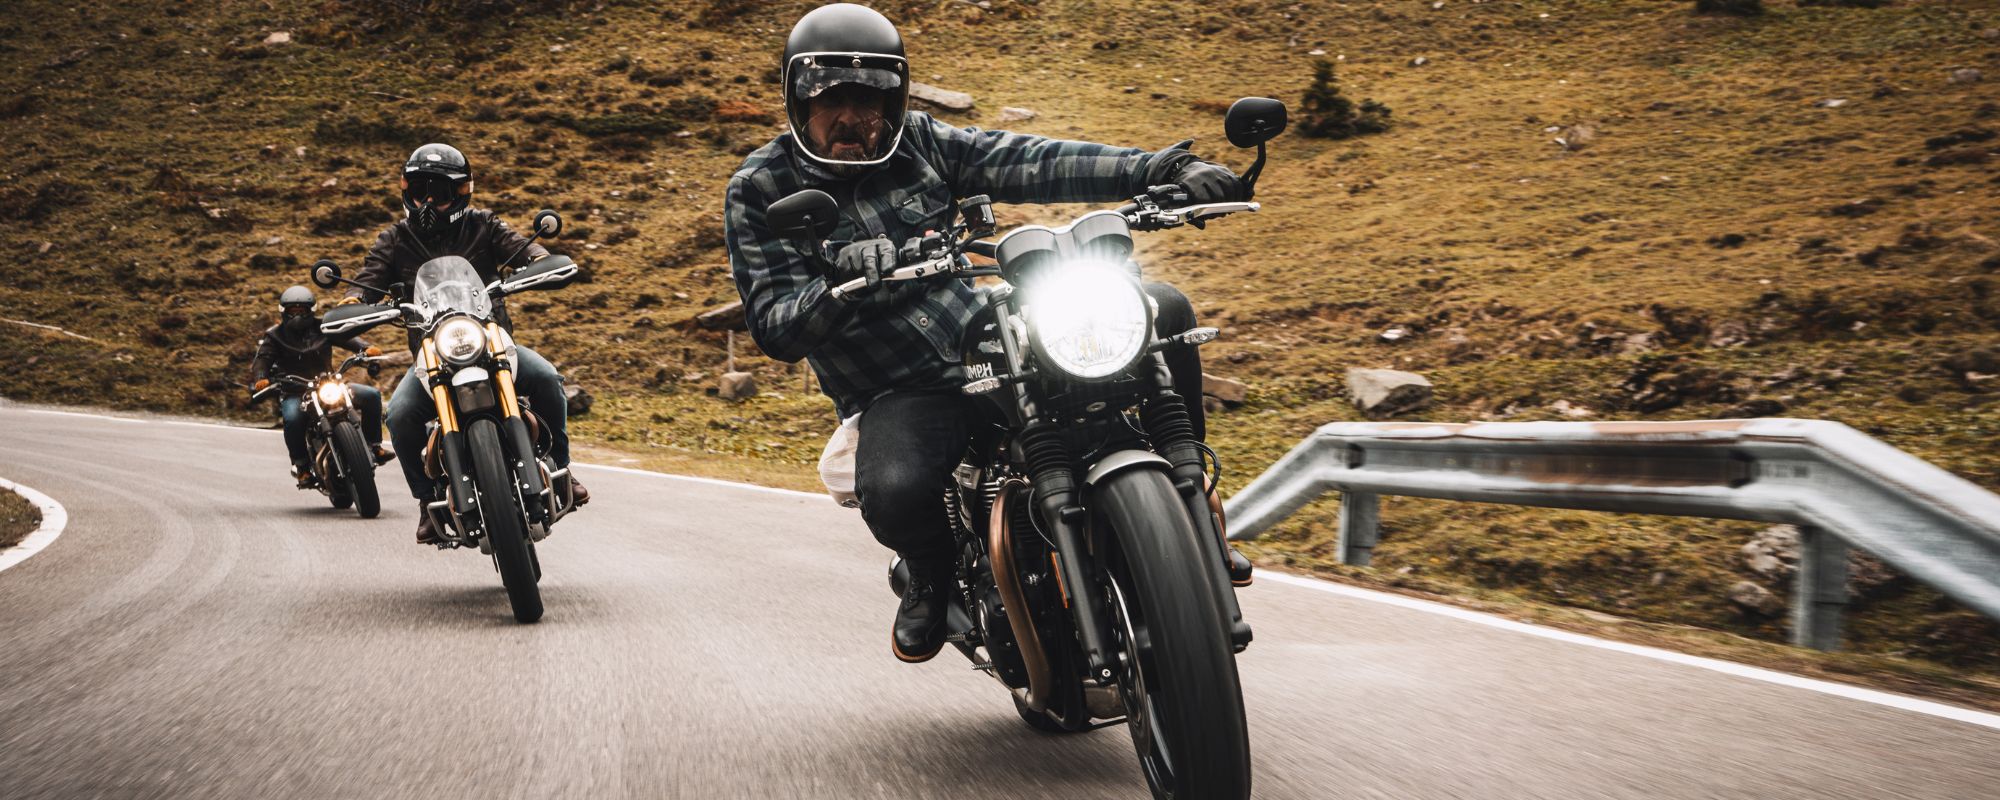 ROKKER - die Schweizer Premium-Brand für Motorradbekleidung - gibt hier im Blog wertvolle Tipps rund um das Thema Fahrsicherheitstraining Motorrad